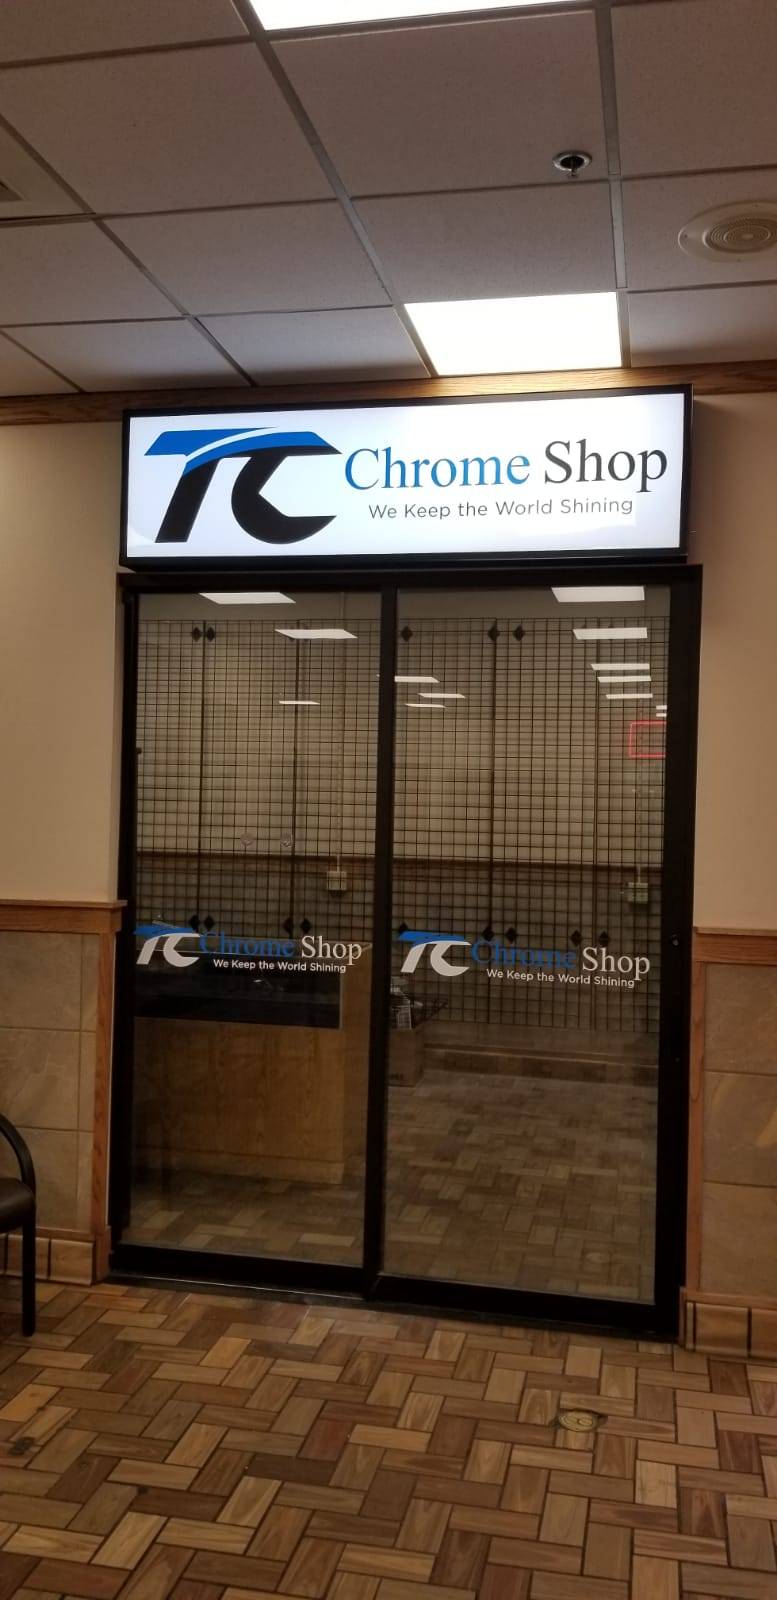 TC CHROME SHOP I | Inside Petro Truck Stop, 1295 Horizon Blvd, Horizon City, TX 79927 | Phone: (915) 859-3833